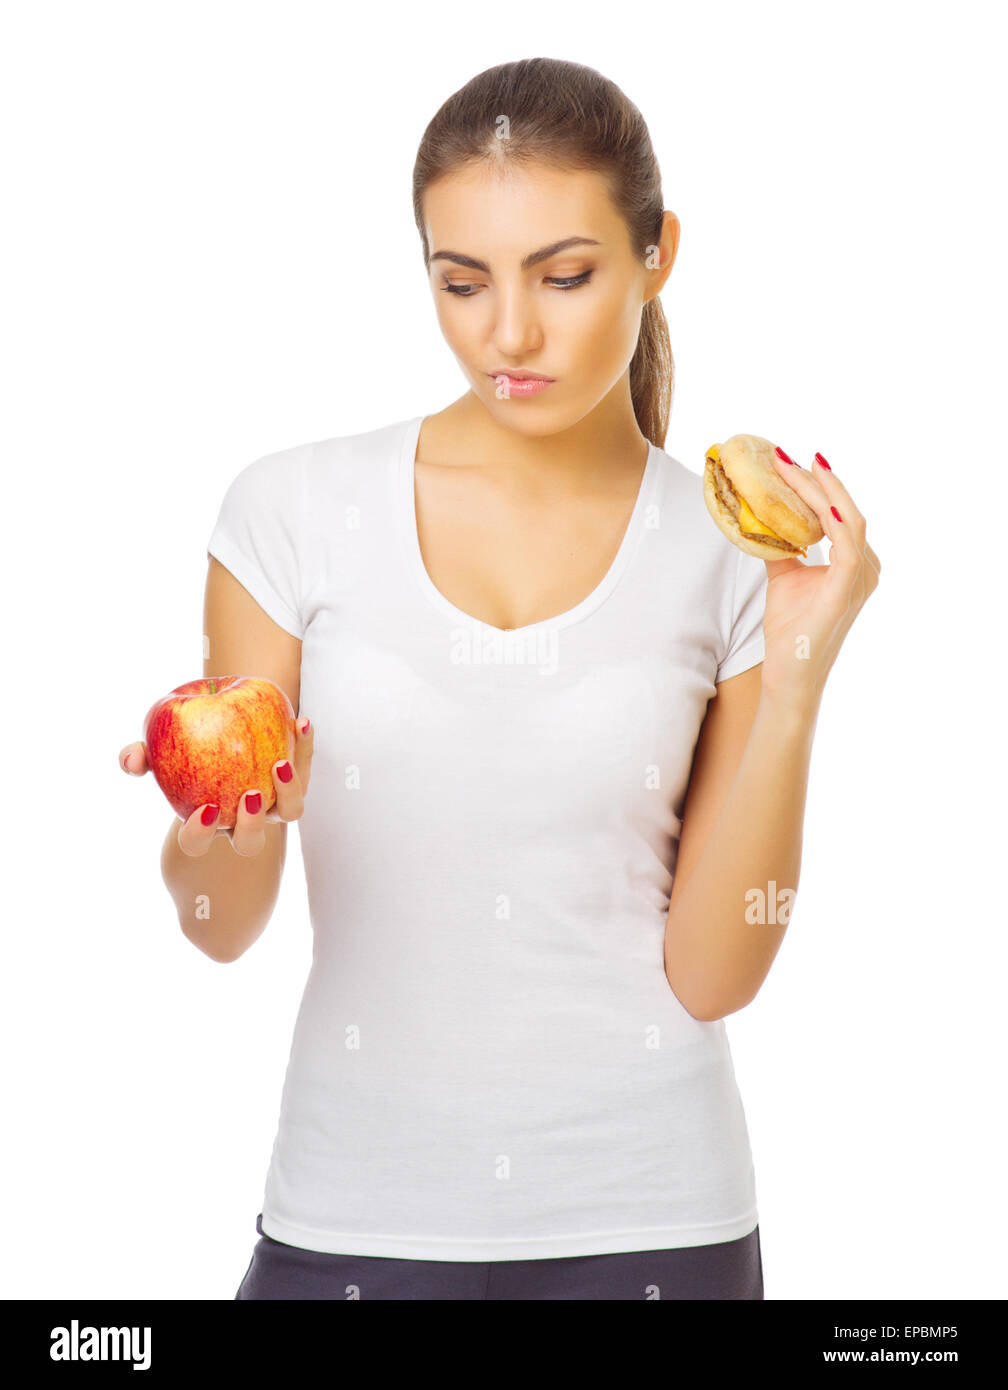 Jeune femme avec apple et isolées du hamburger Banque D'Images